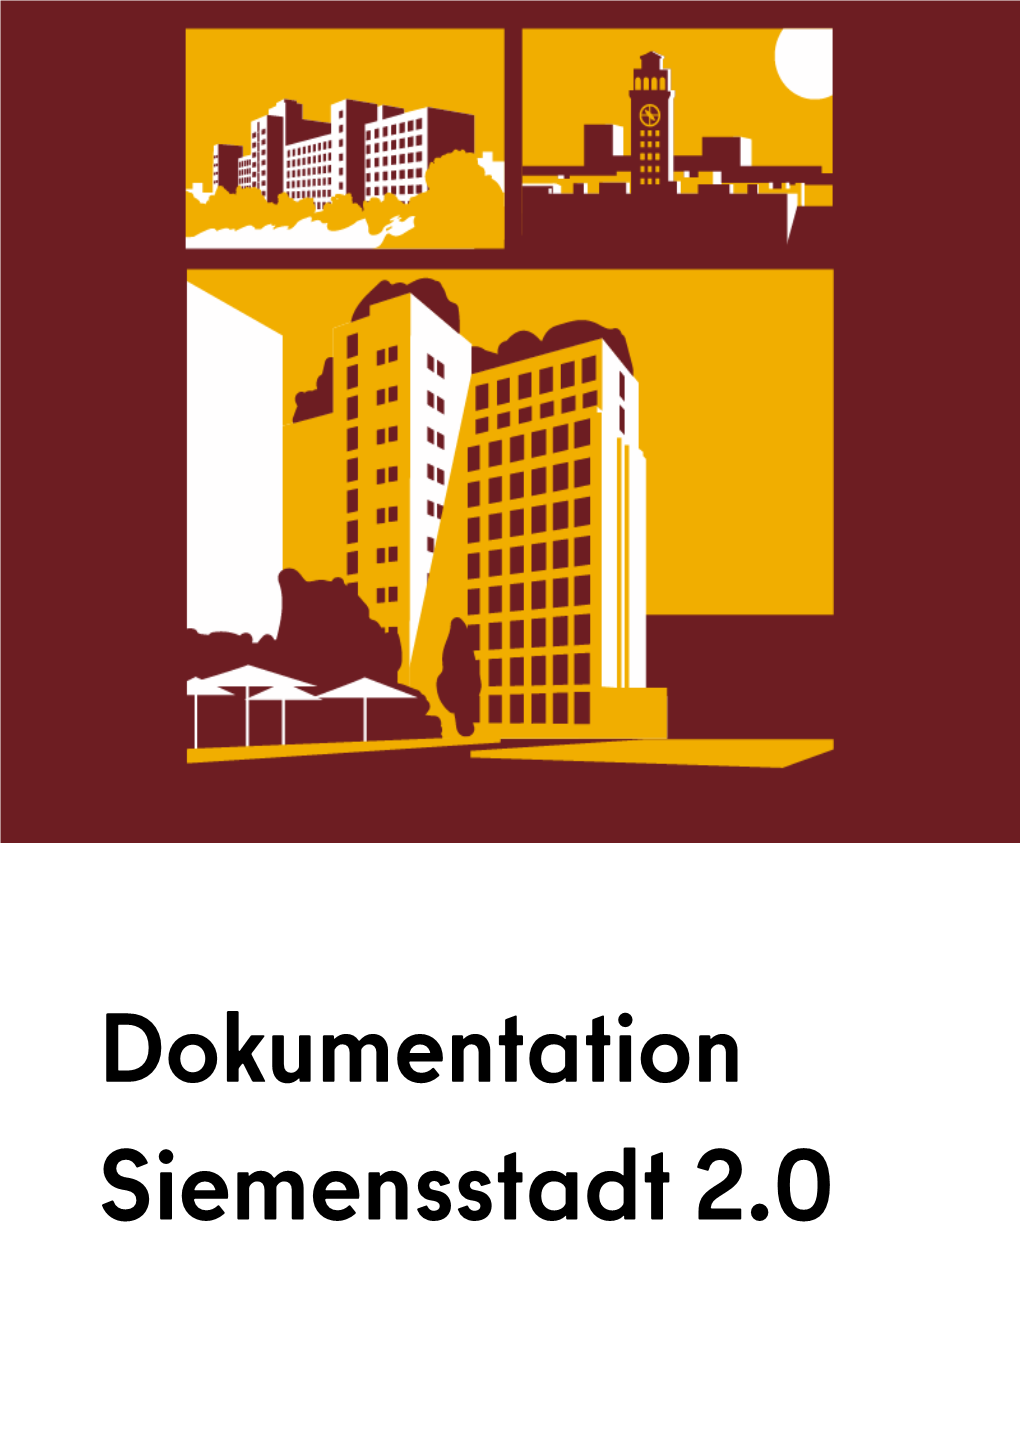 Siemensstadt 2.0